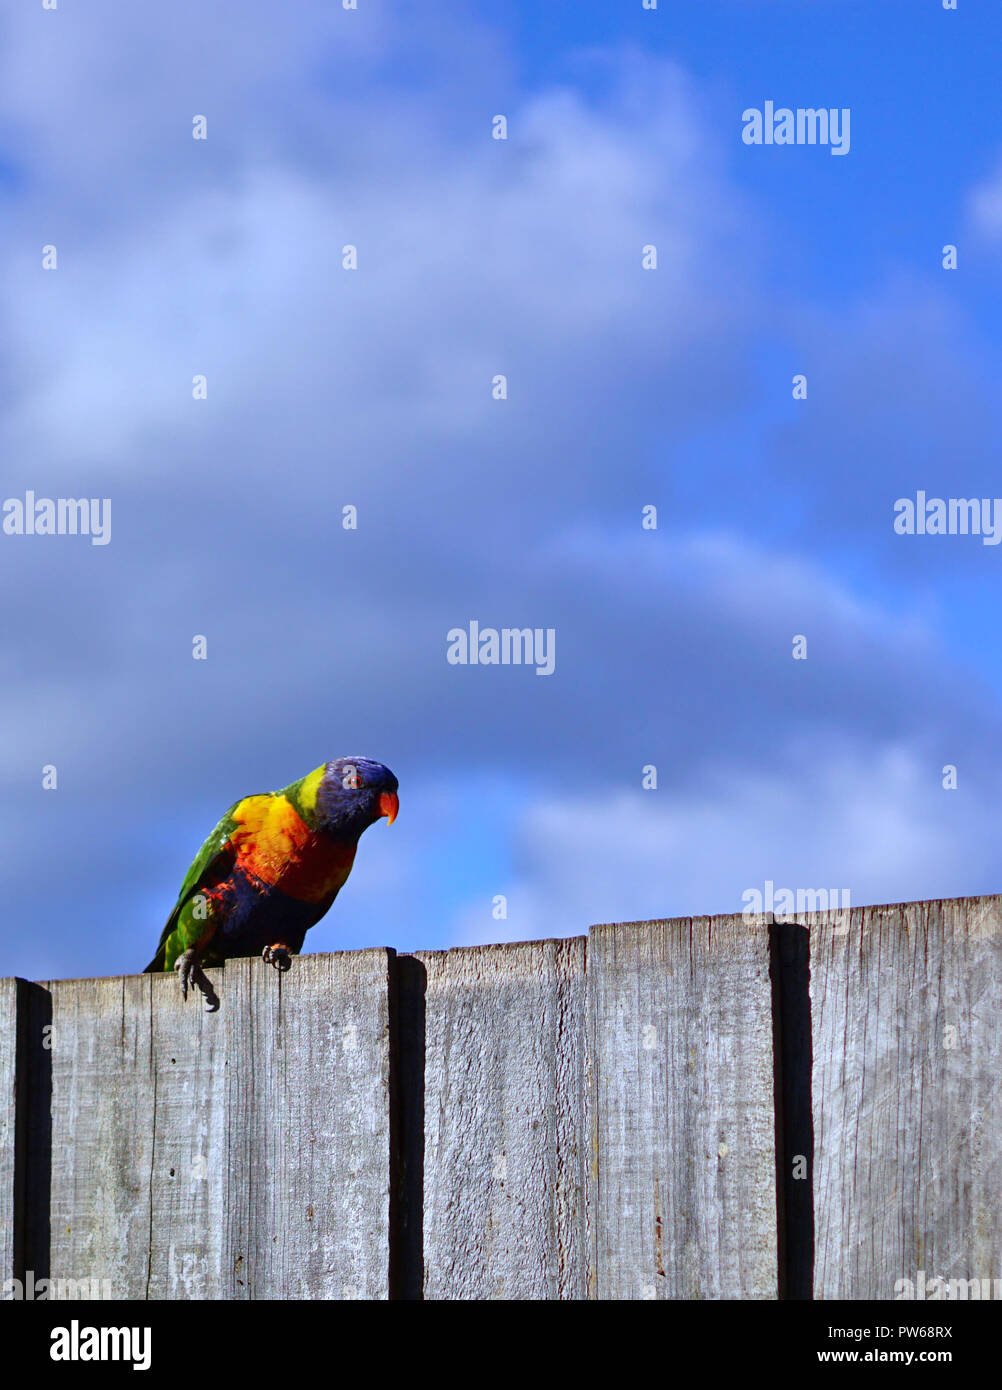 Farbenfrohe Papageien auf Zaun mit bewölktem Himmel Hintergrund Stockfoto